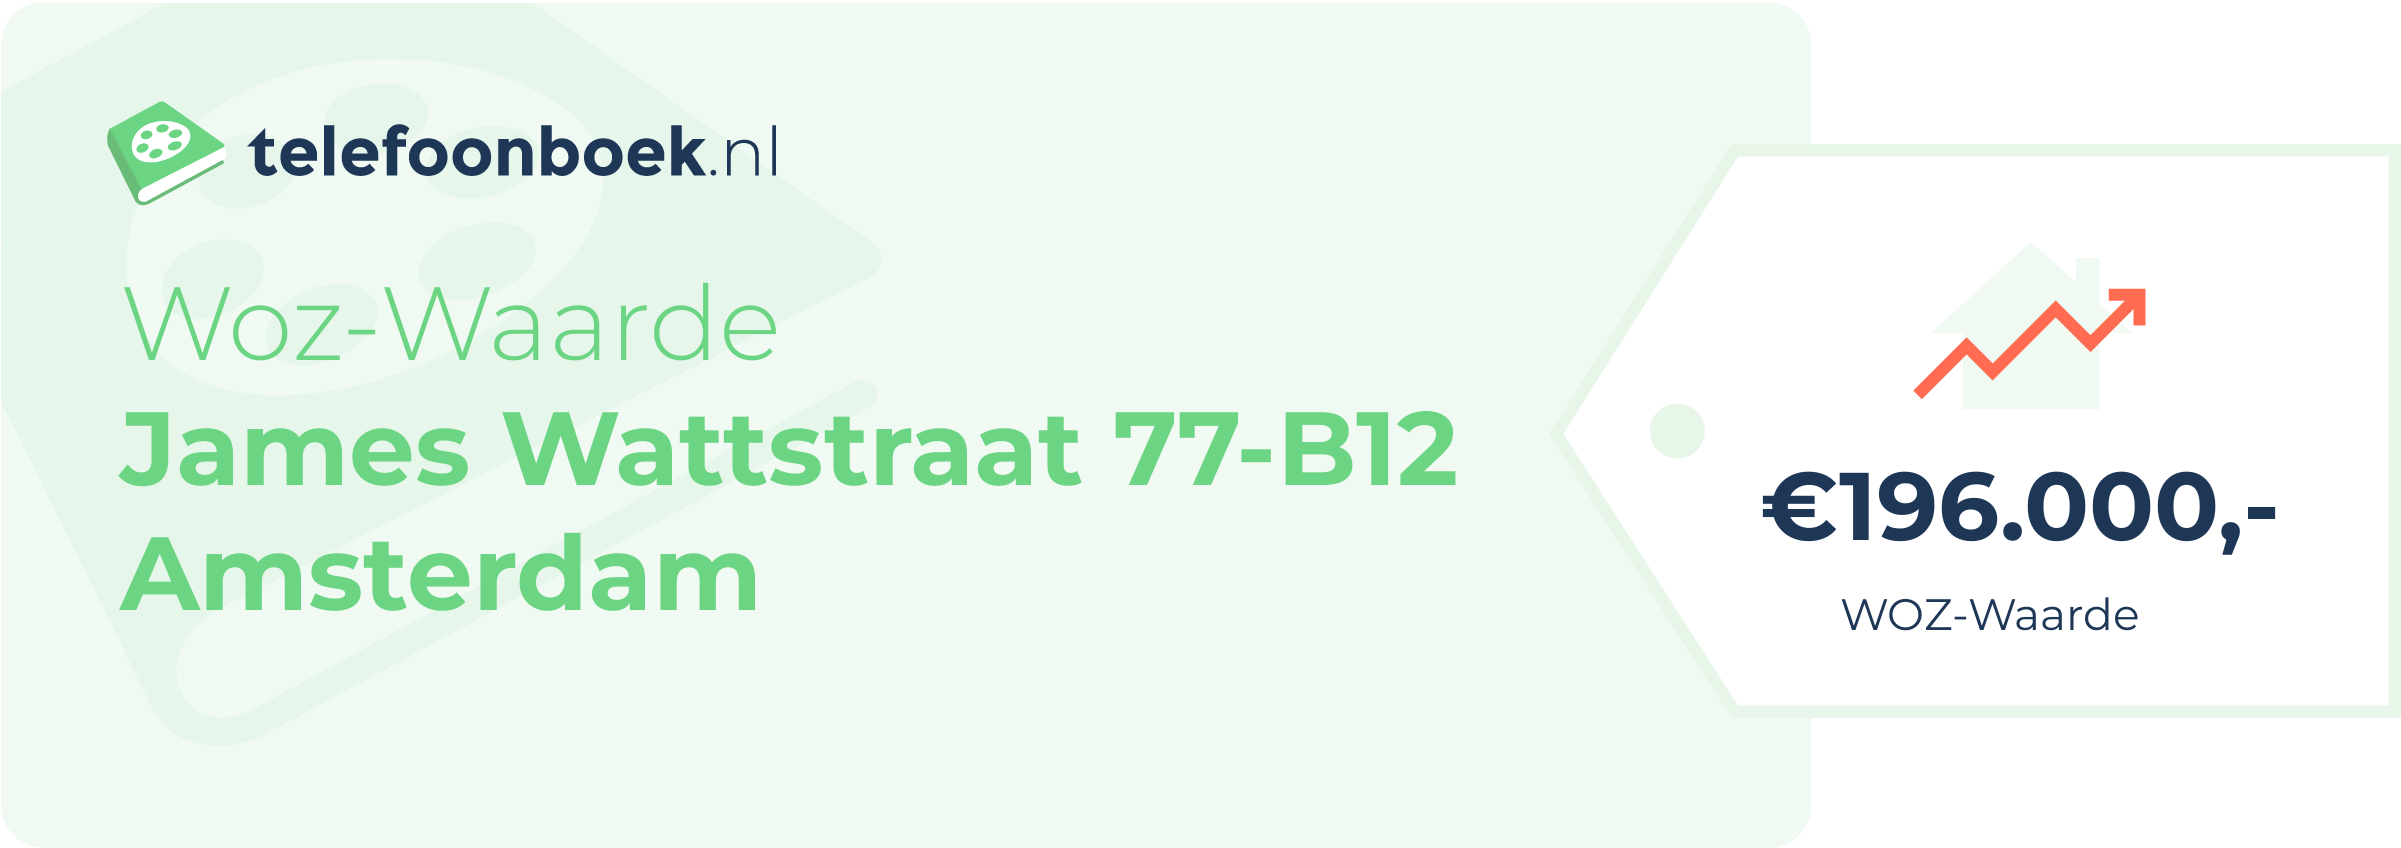 WOZ-waarde James Wattstraat 77-B12 Amsterdam